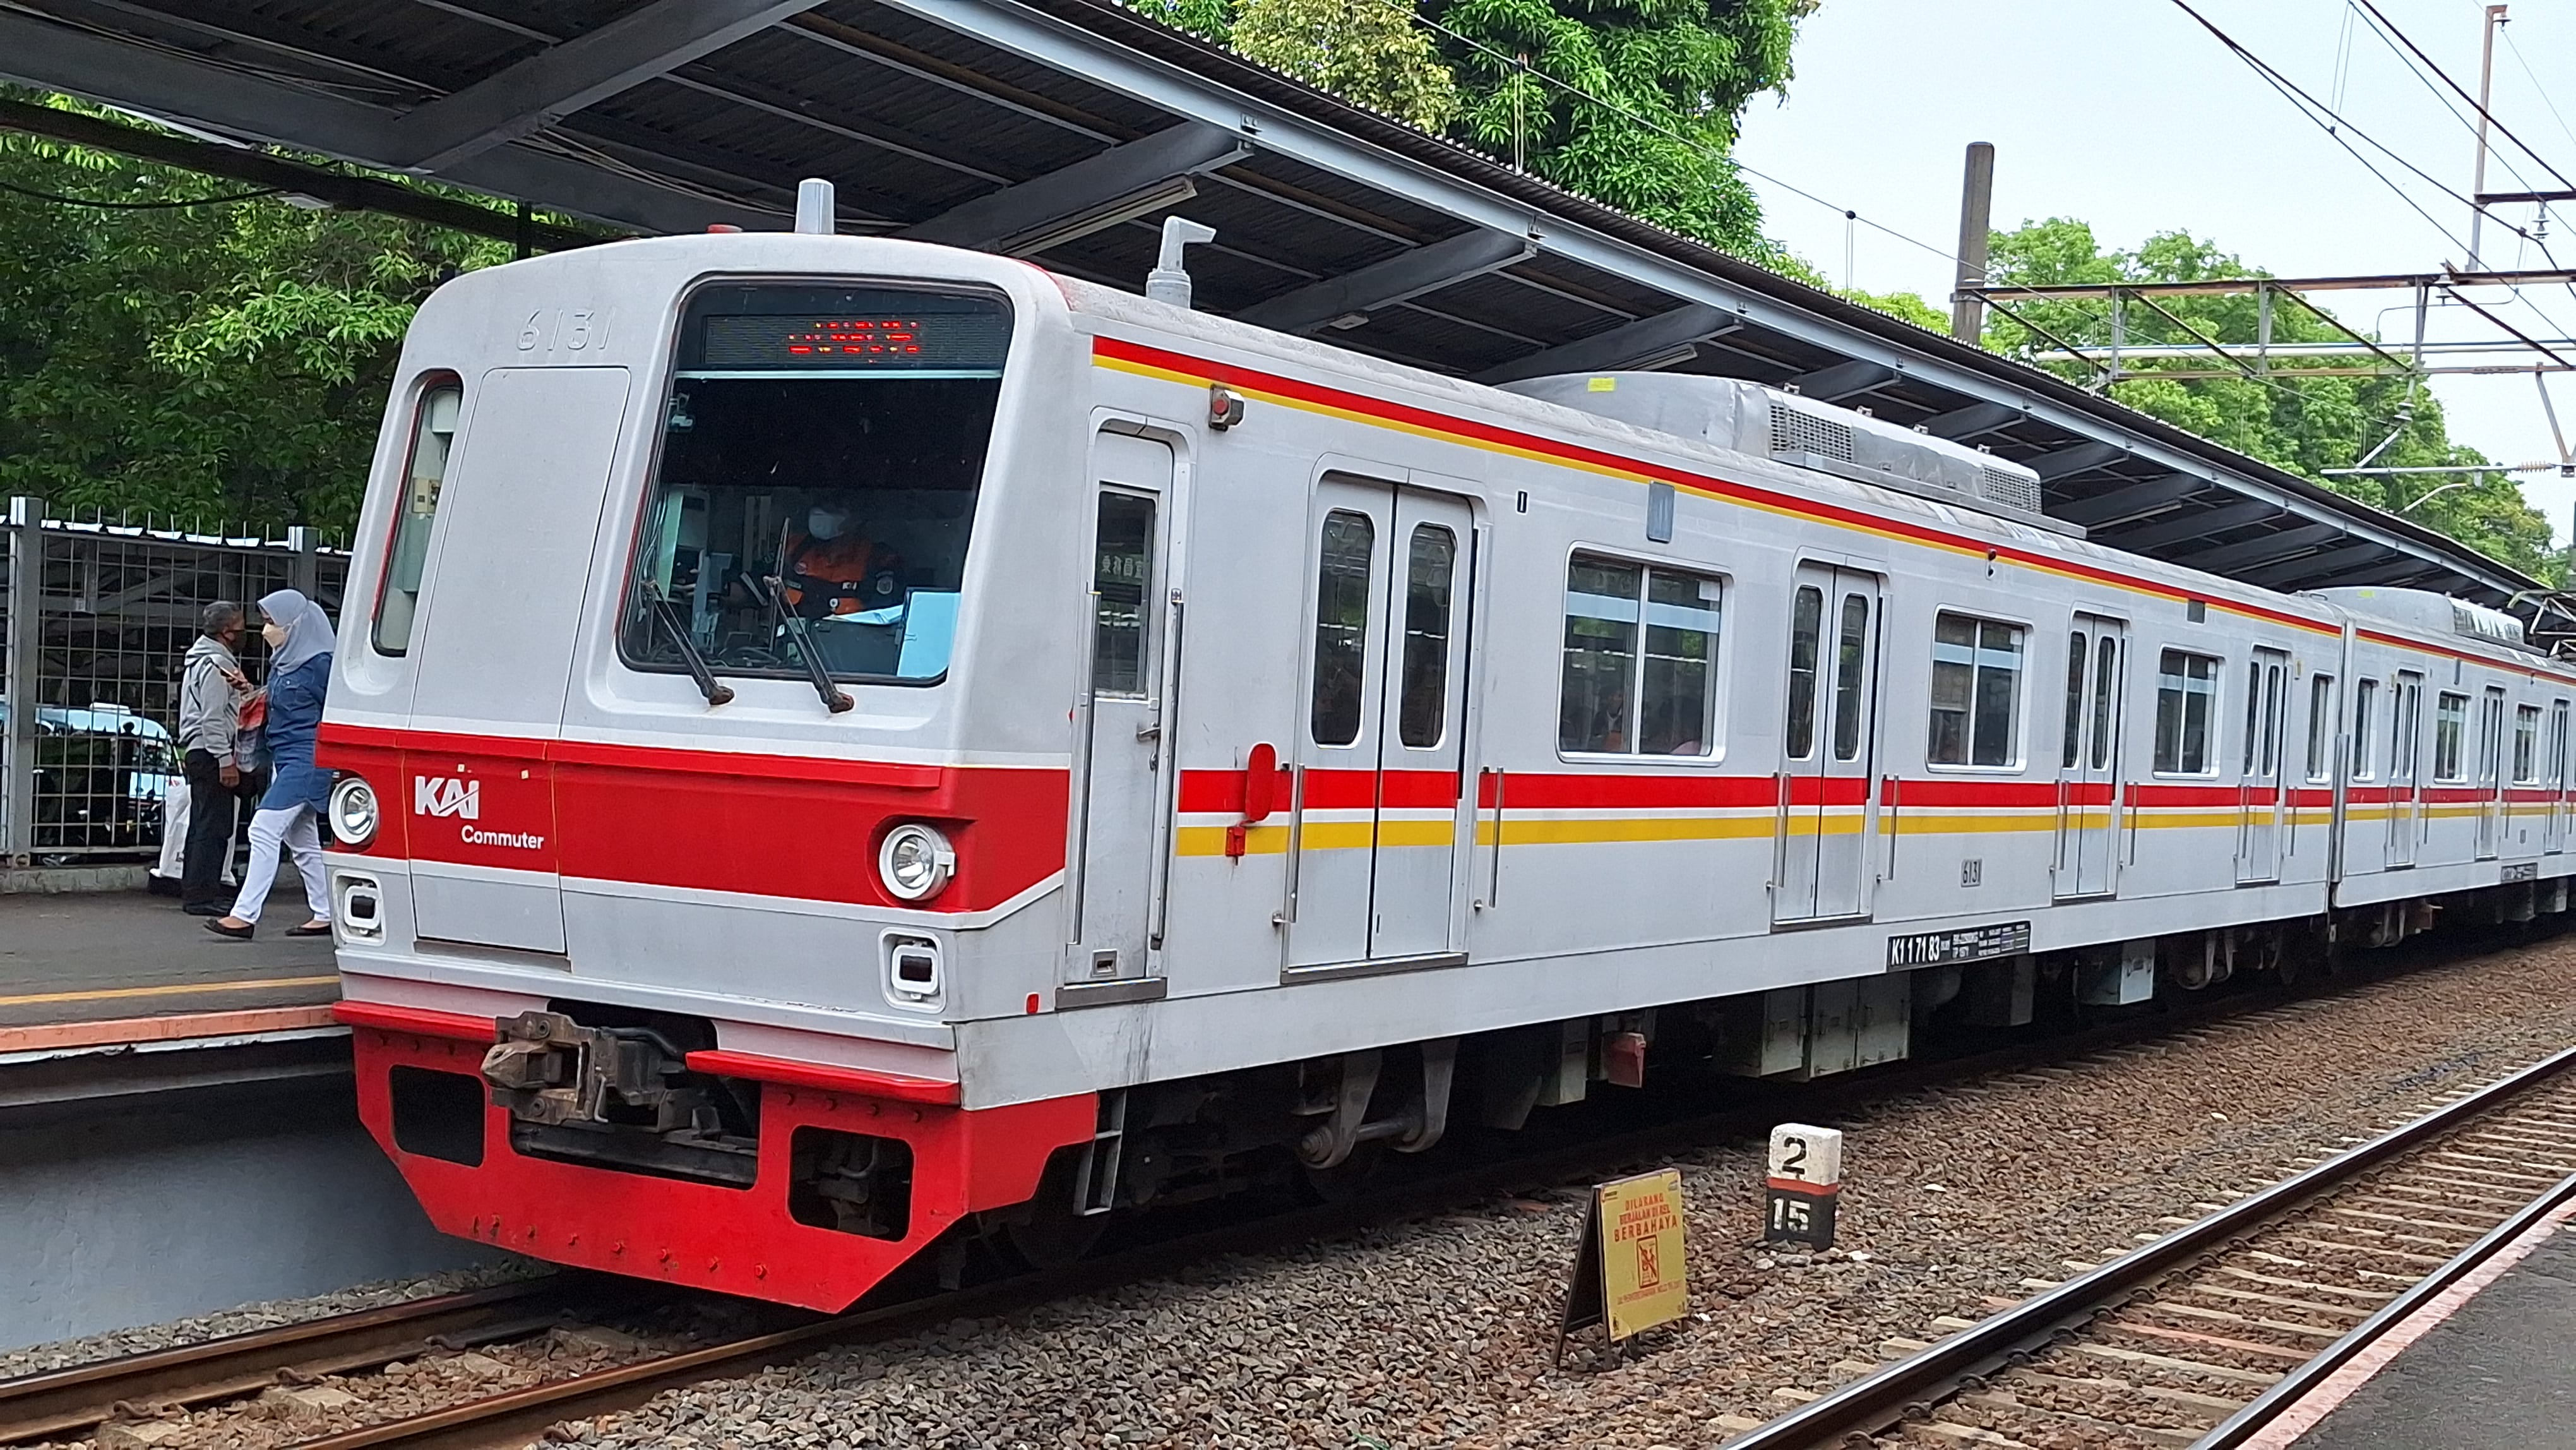 KAI Commuter Daop 8 Surabaya Prediksi 930.853 Orang Gunakan Commuter Line, Sediakan 60 Perjalanan Tiap Hari